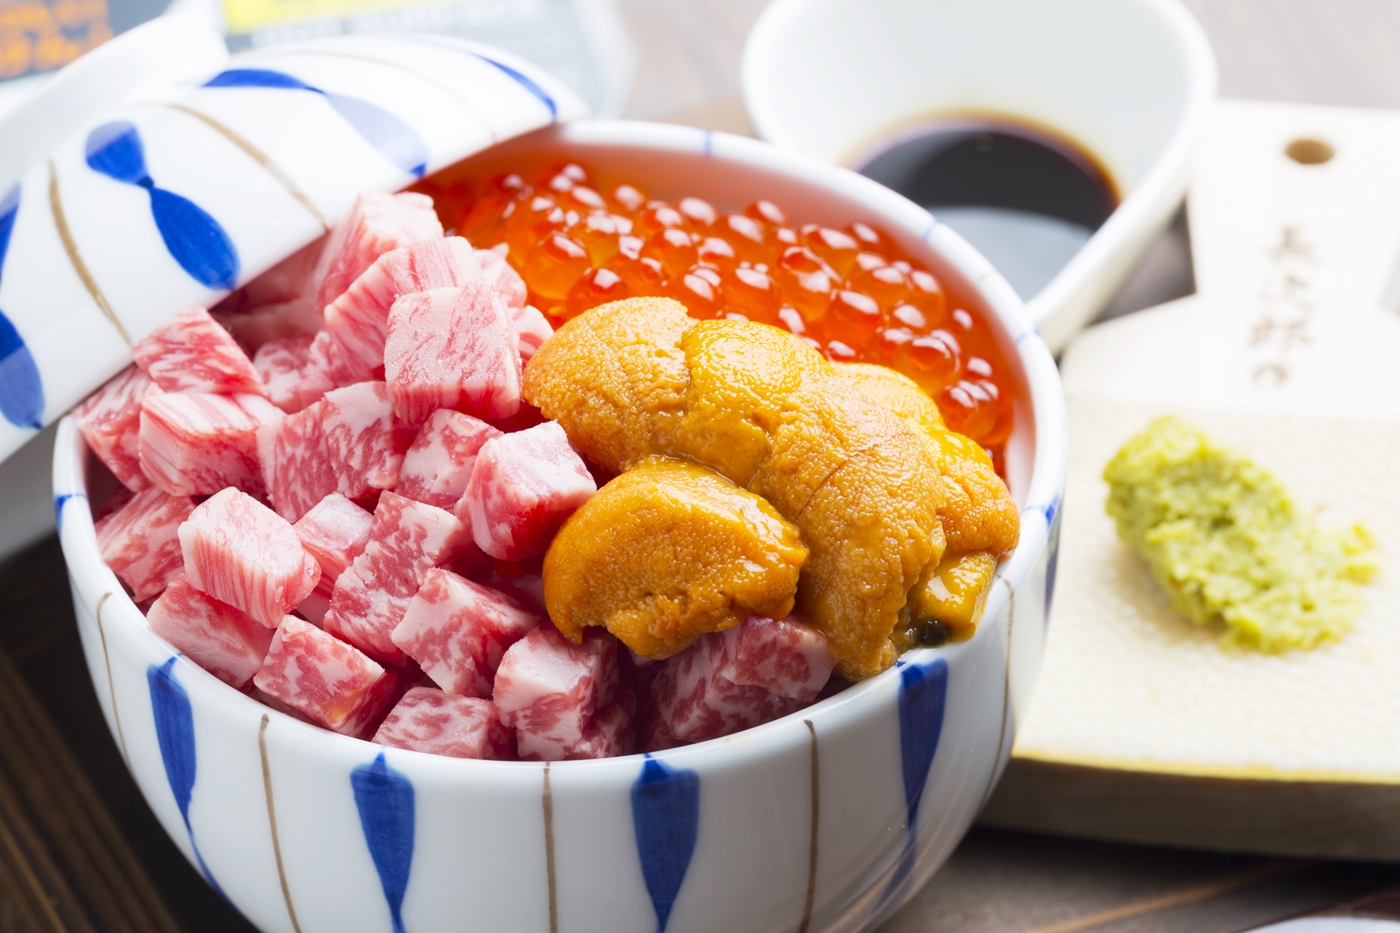 名古屋 大須の焼肉店 肉亭まぼたん で 和牛の肉刺しや希少部位メニューを楽しんで